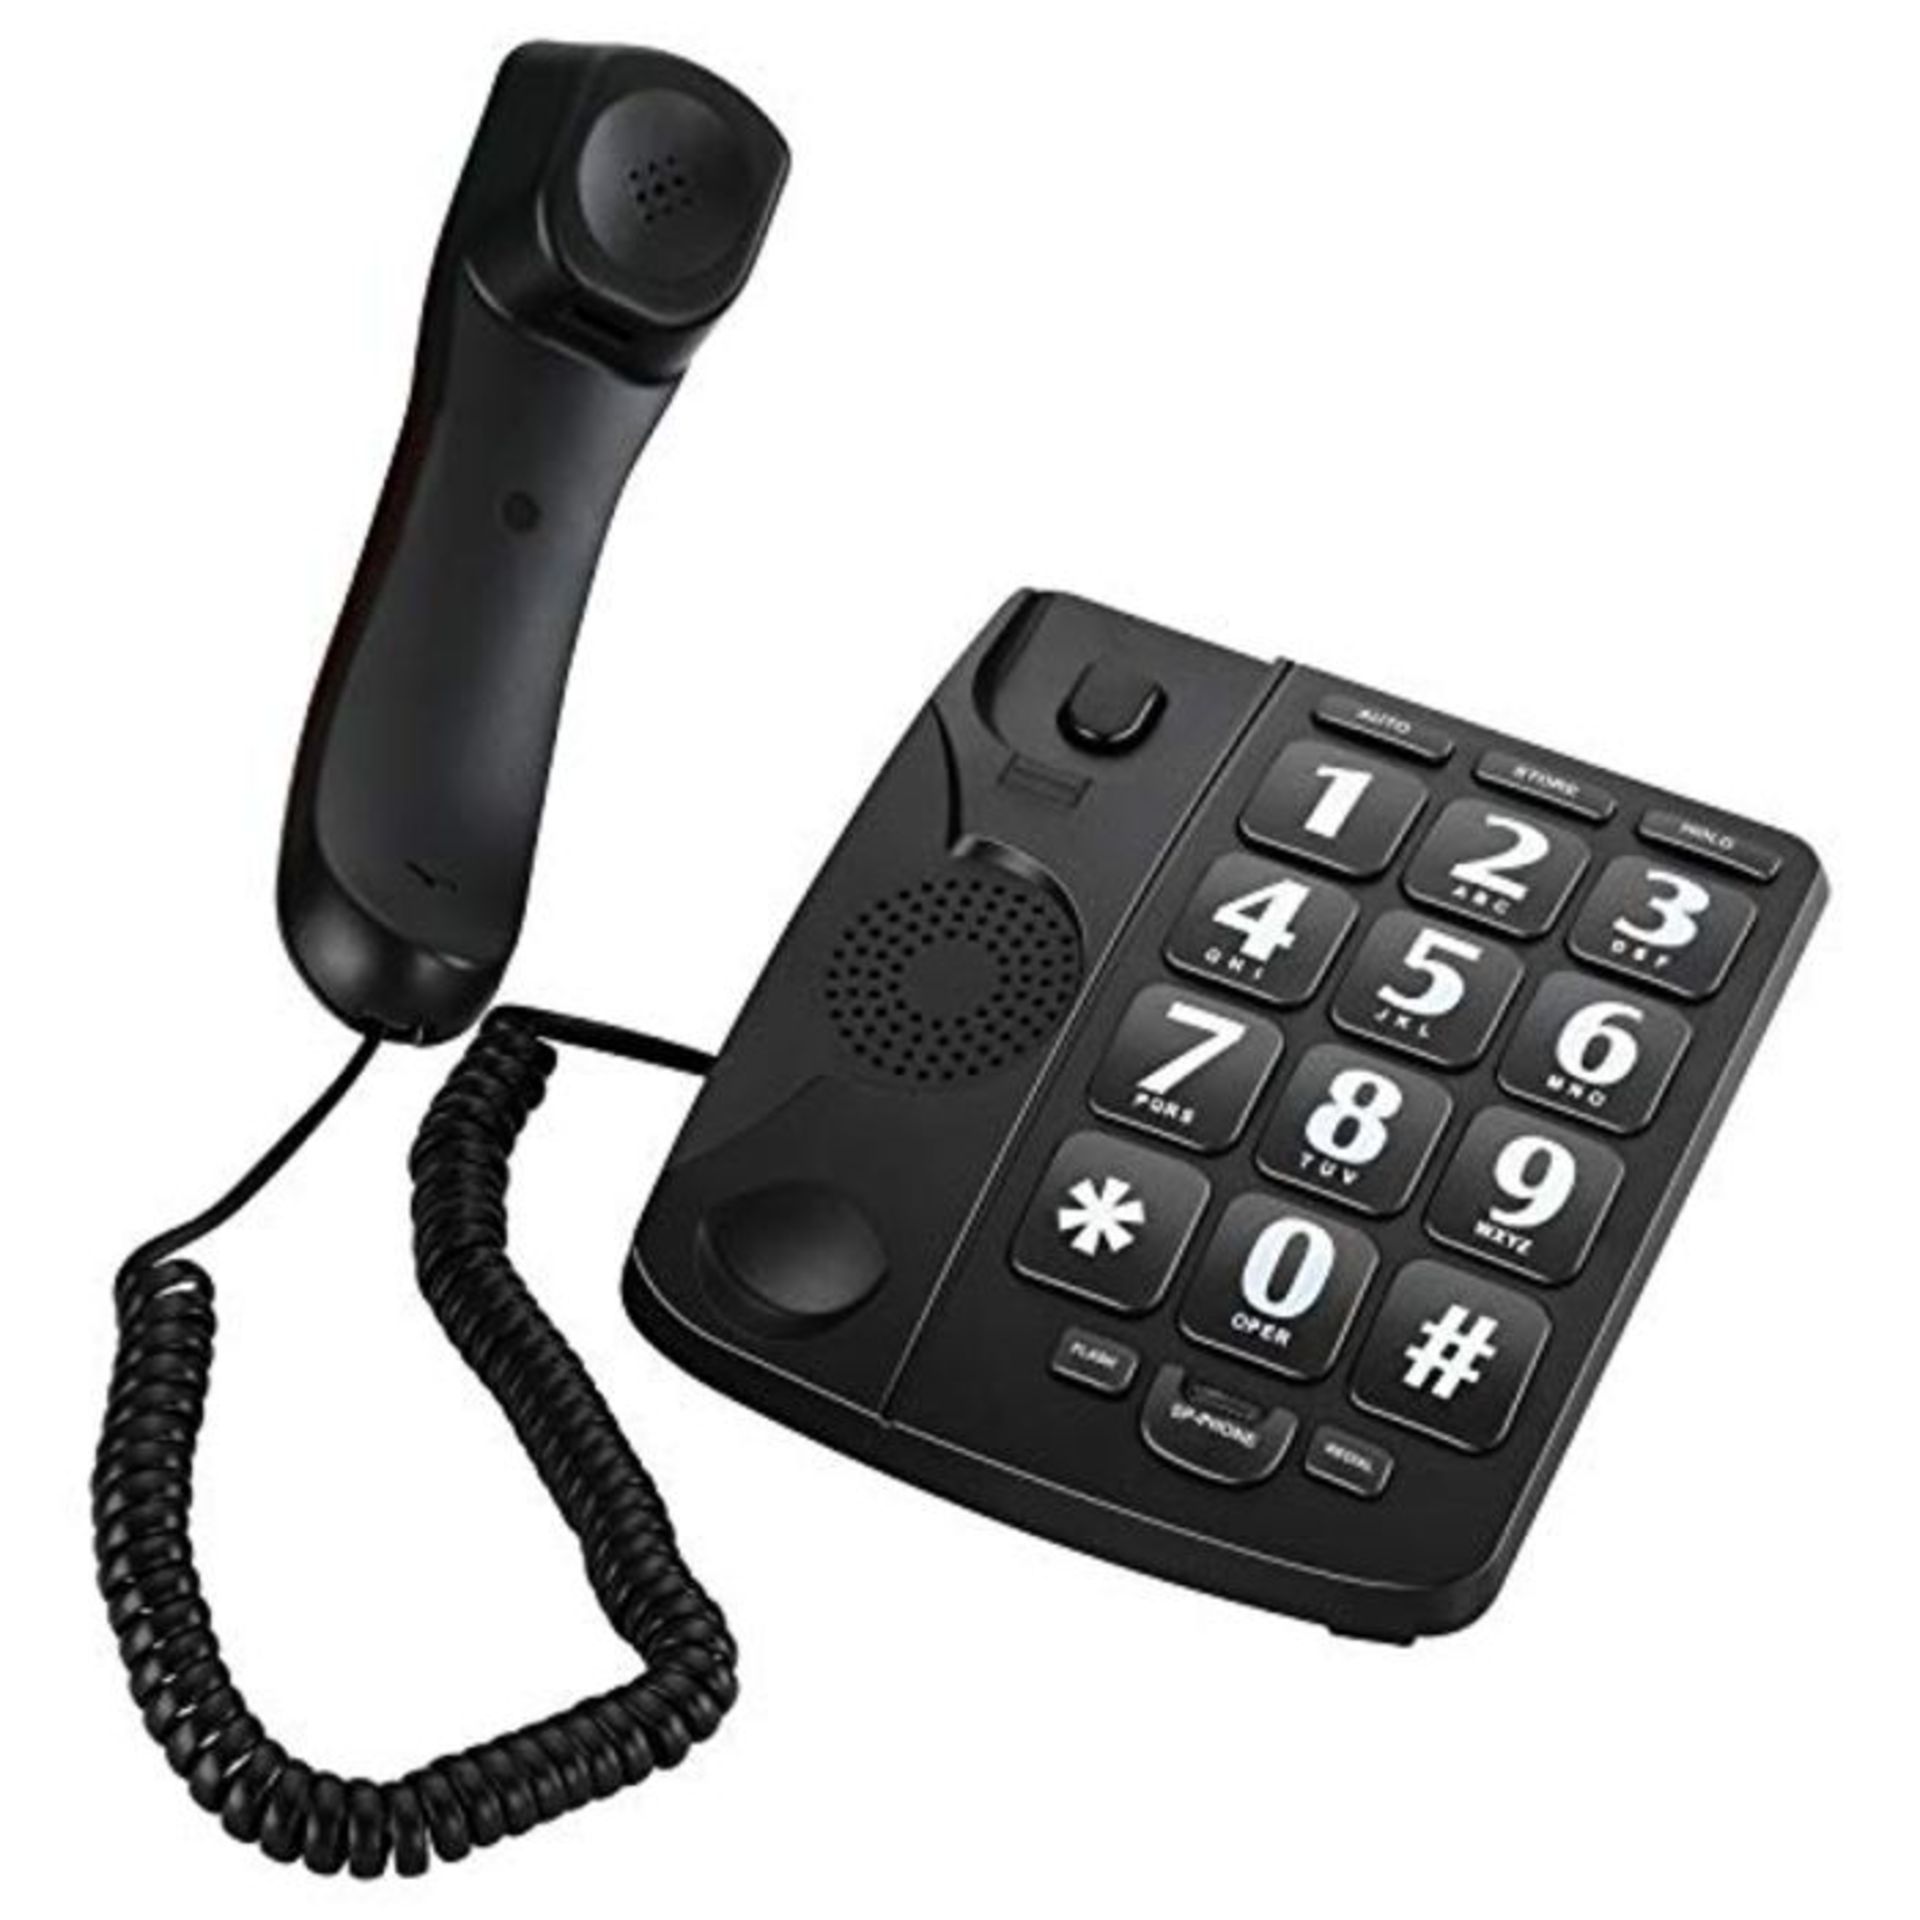 Big Button Landline Phone, Elikliv Desktop Landline Phones for Elder with Larger Keys,